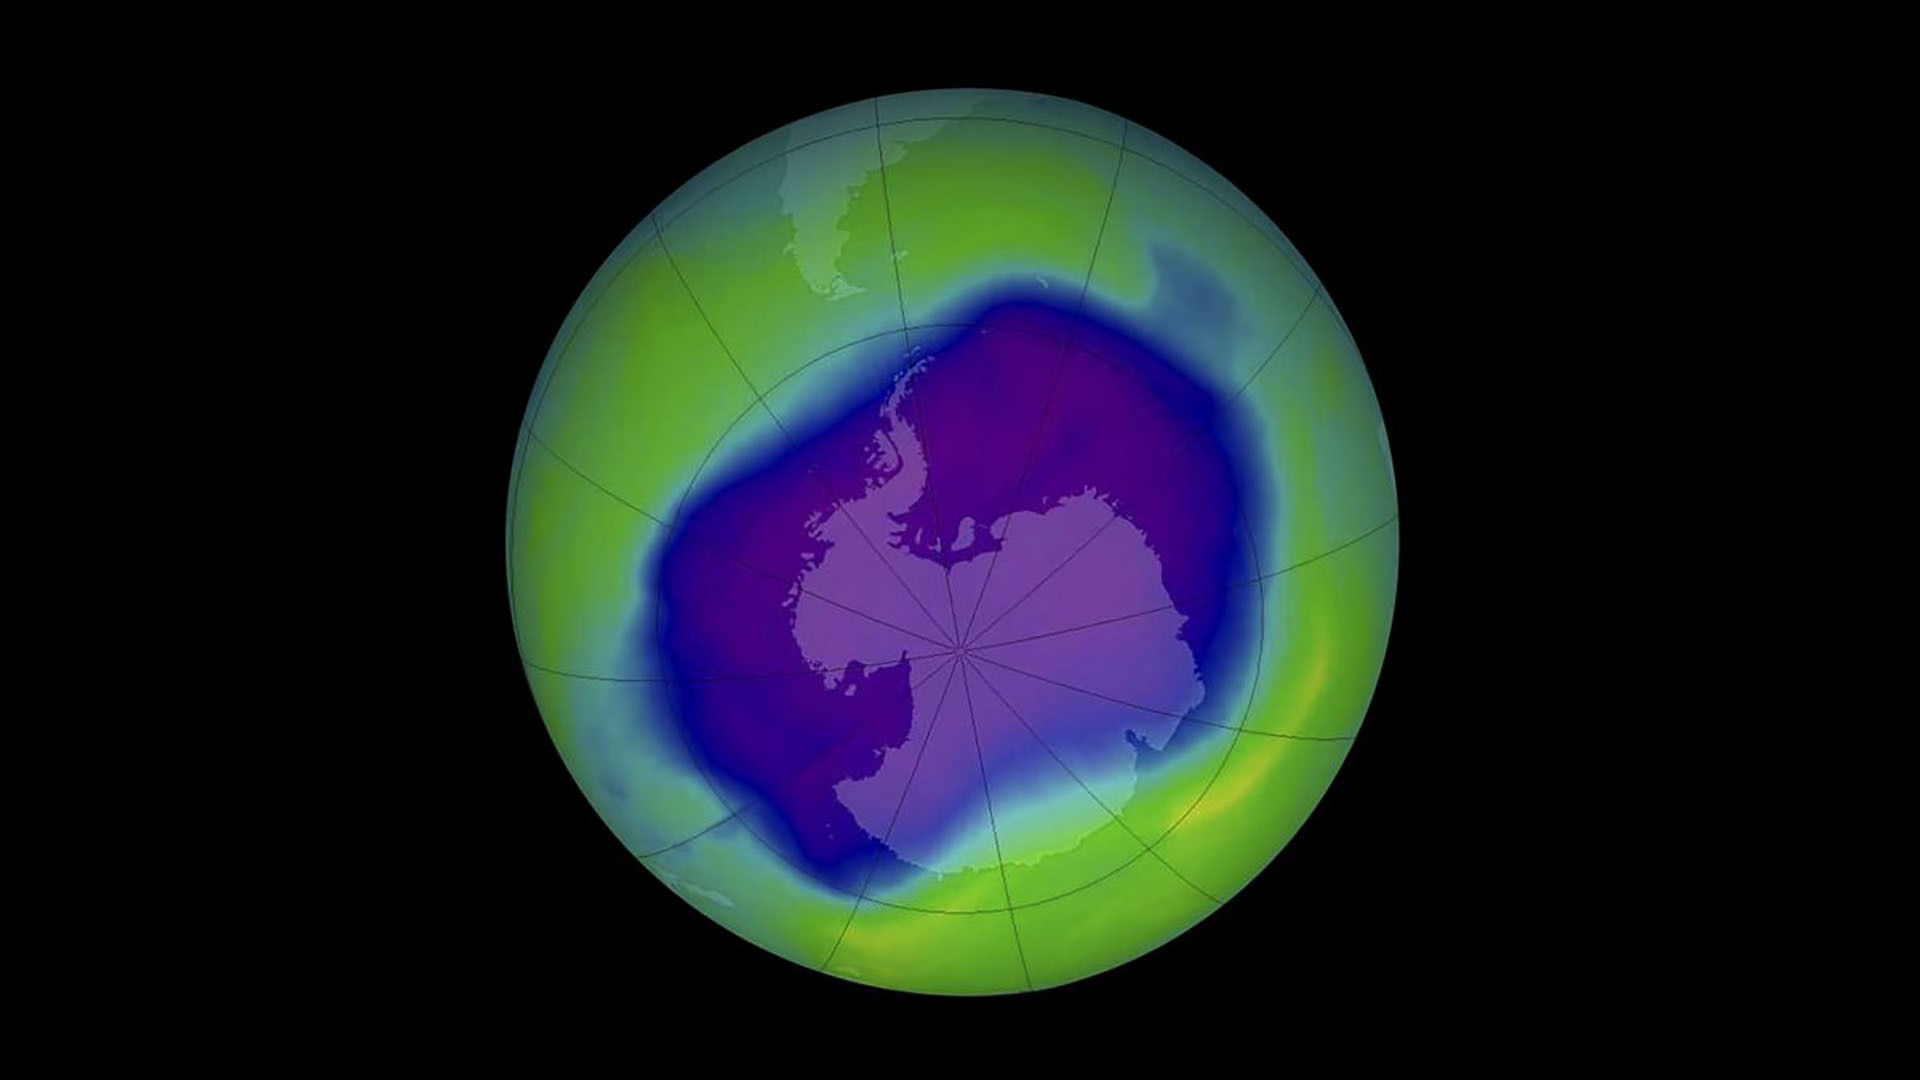 Lỗ hổng tầng ozone, giống như một vết loét màu tím ở tầng khí quyển bên trên Nam bán cầu. (Nguồn: Vox.com)